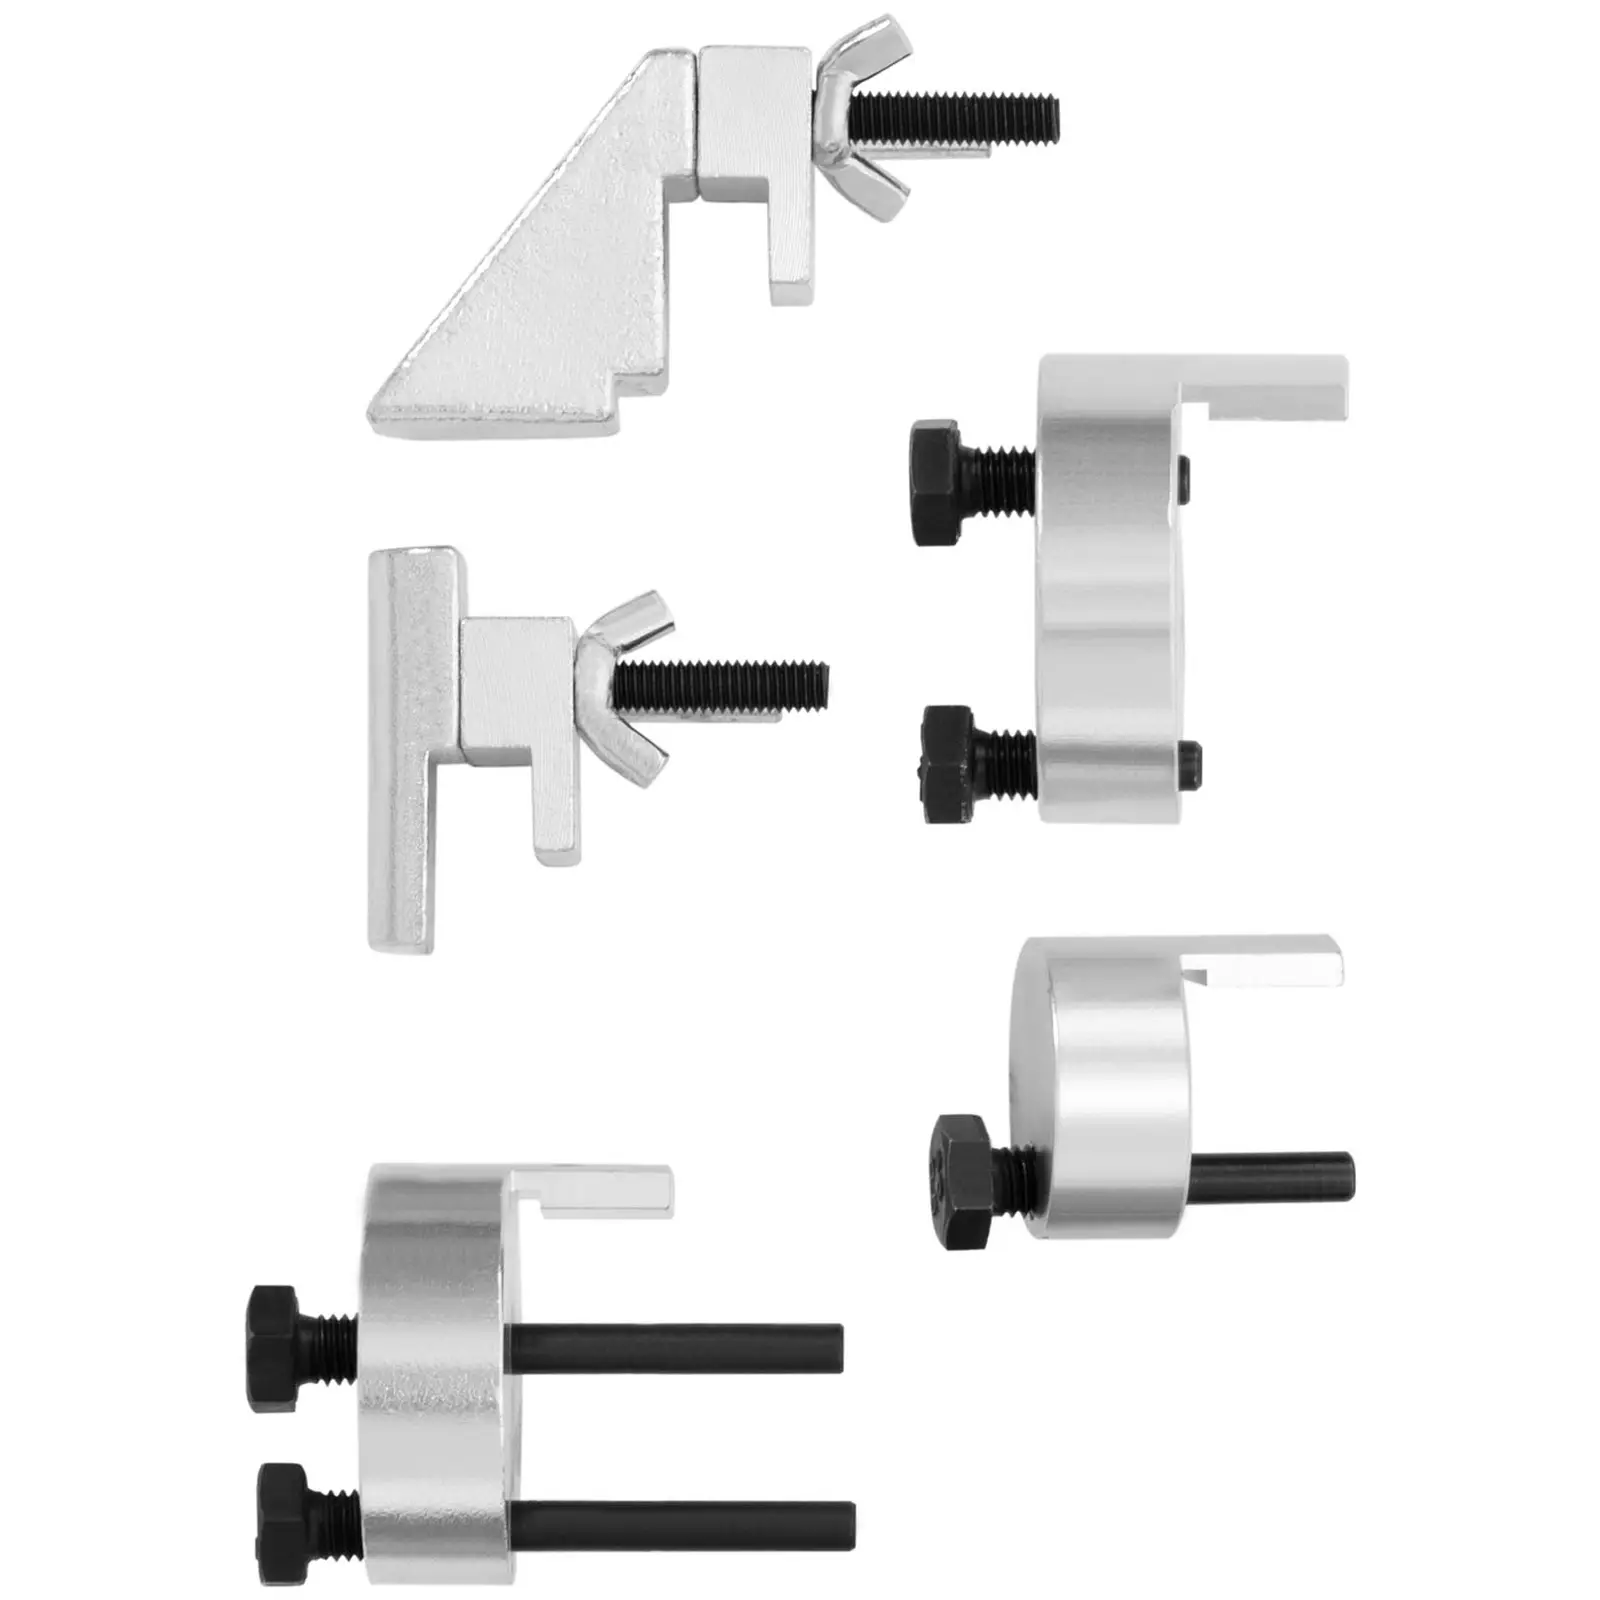 De-/Montage-Werkzeug für elastische Keilrippenriemen